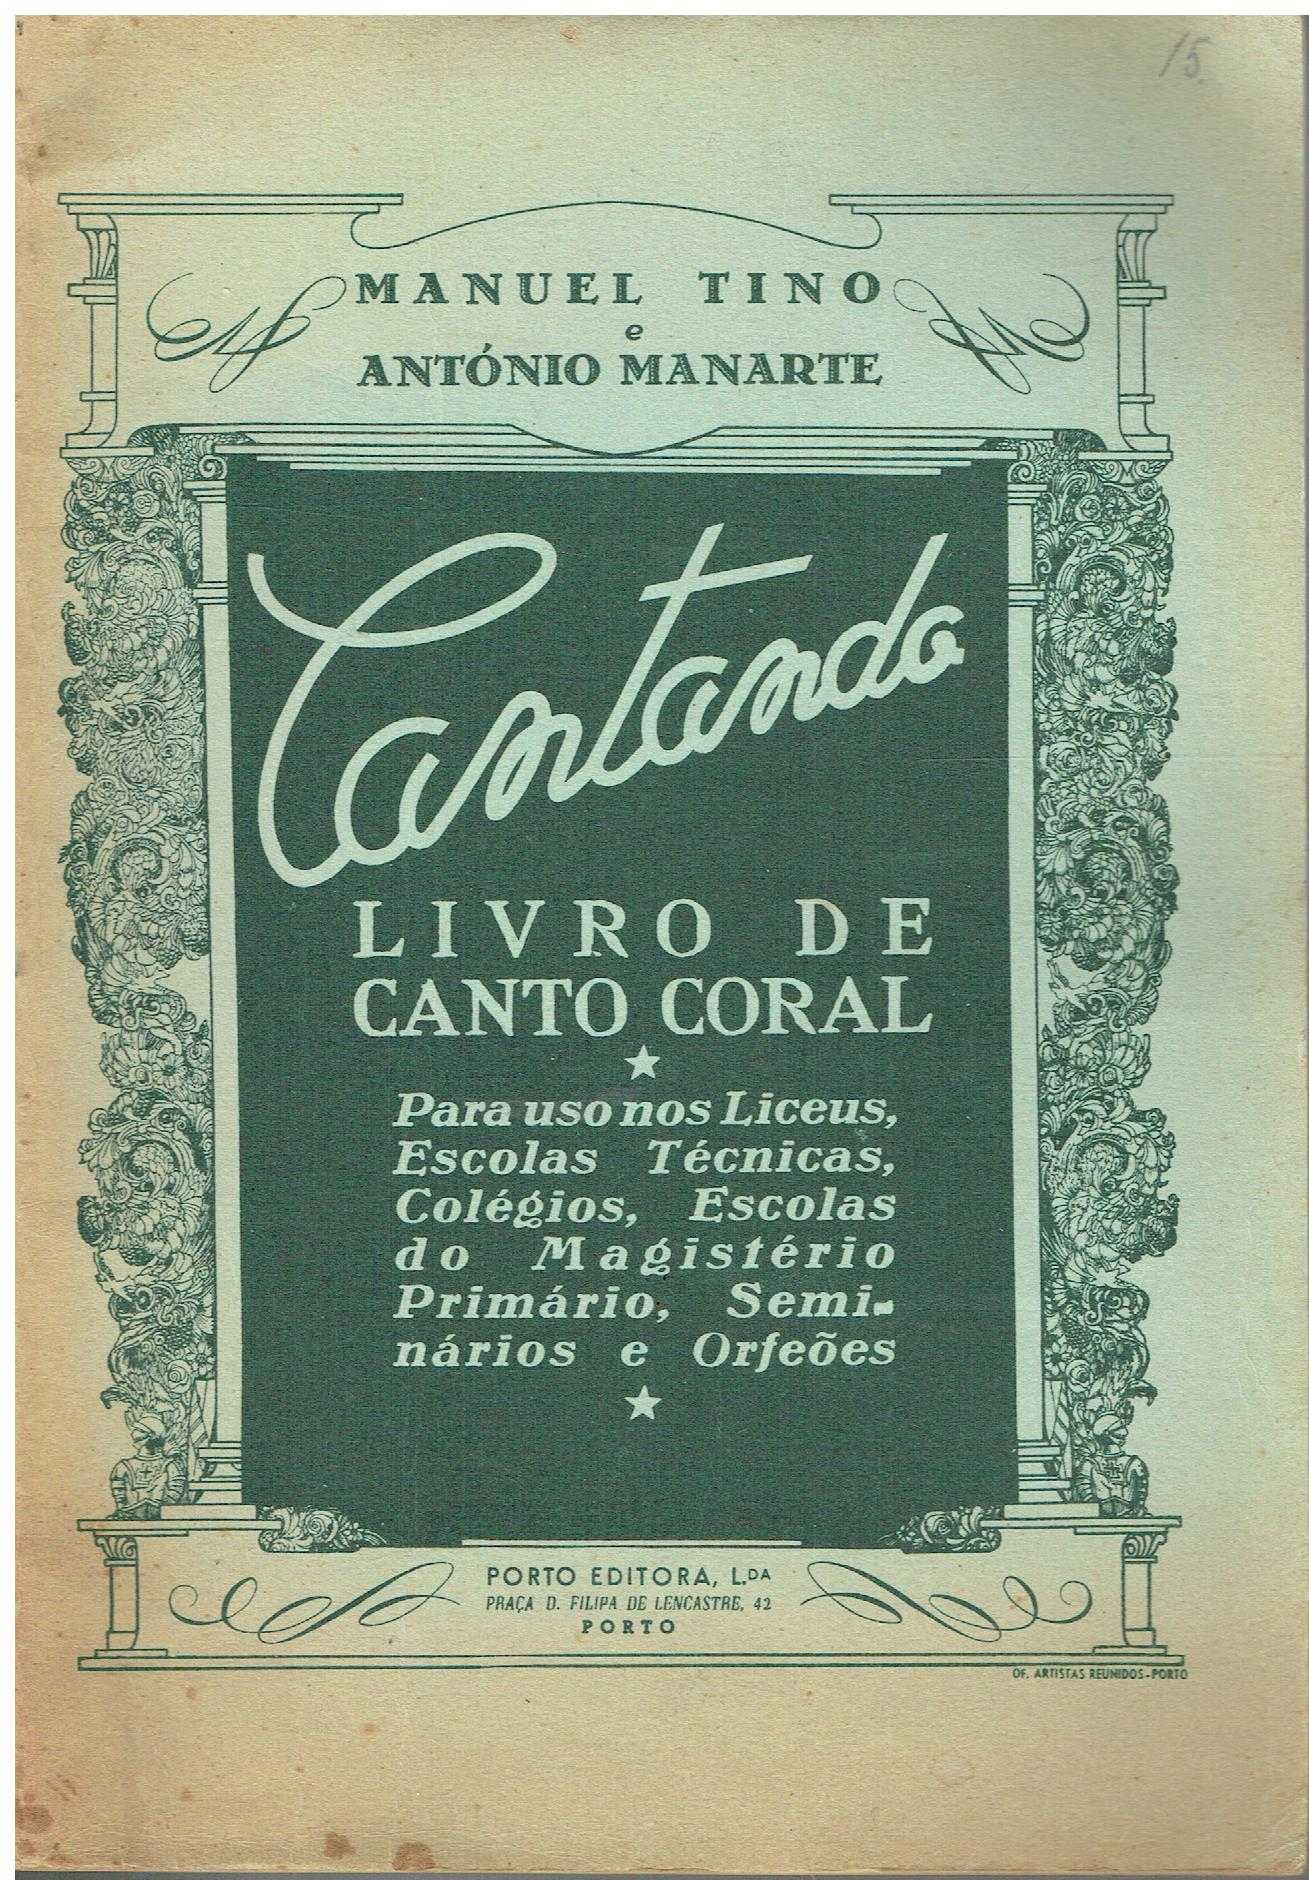 7499
Cantando, livro de Canto Coral
de  Manuel Tino e António Manarte